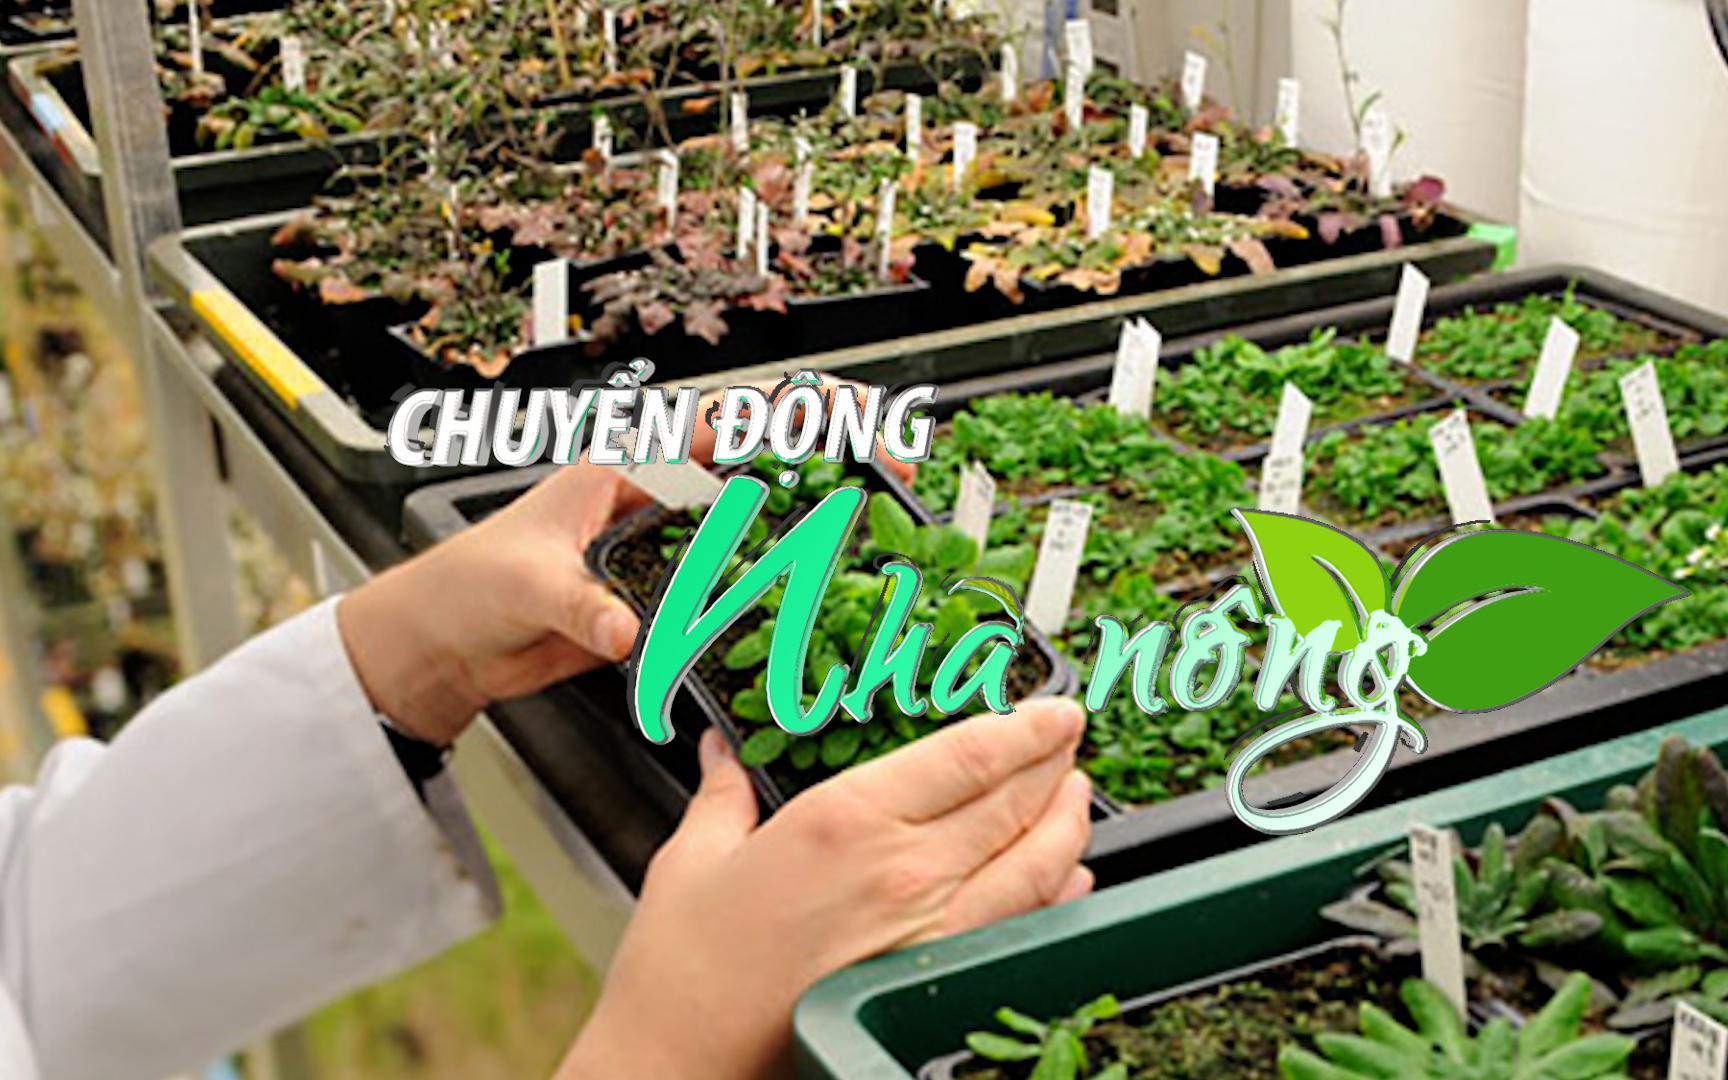 Chuyển động Nhà nông 28/12: Việt Nam nhập khẩu trên 90% hạt giống rau, hoa mỗi năm